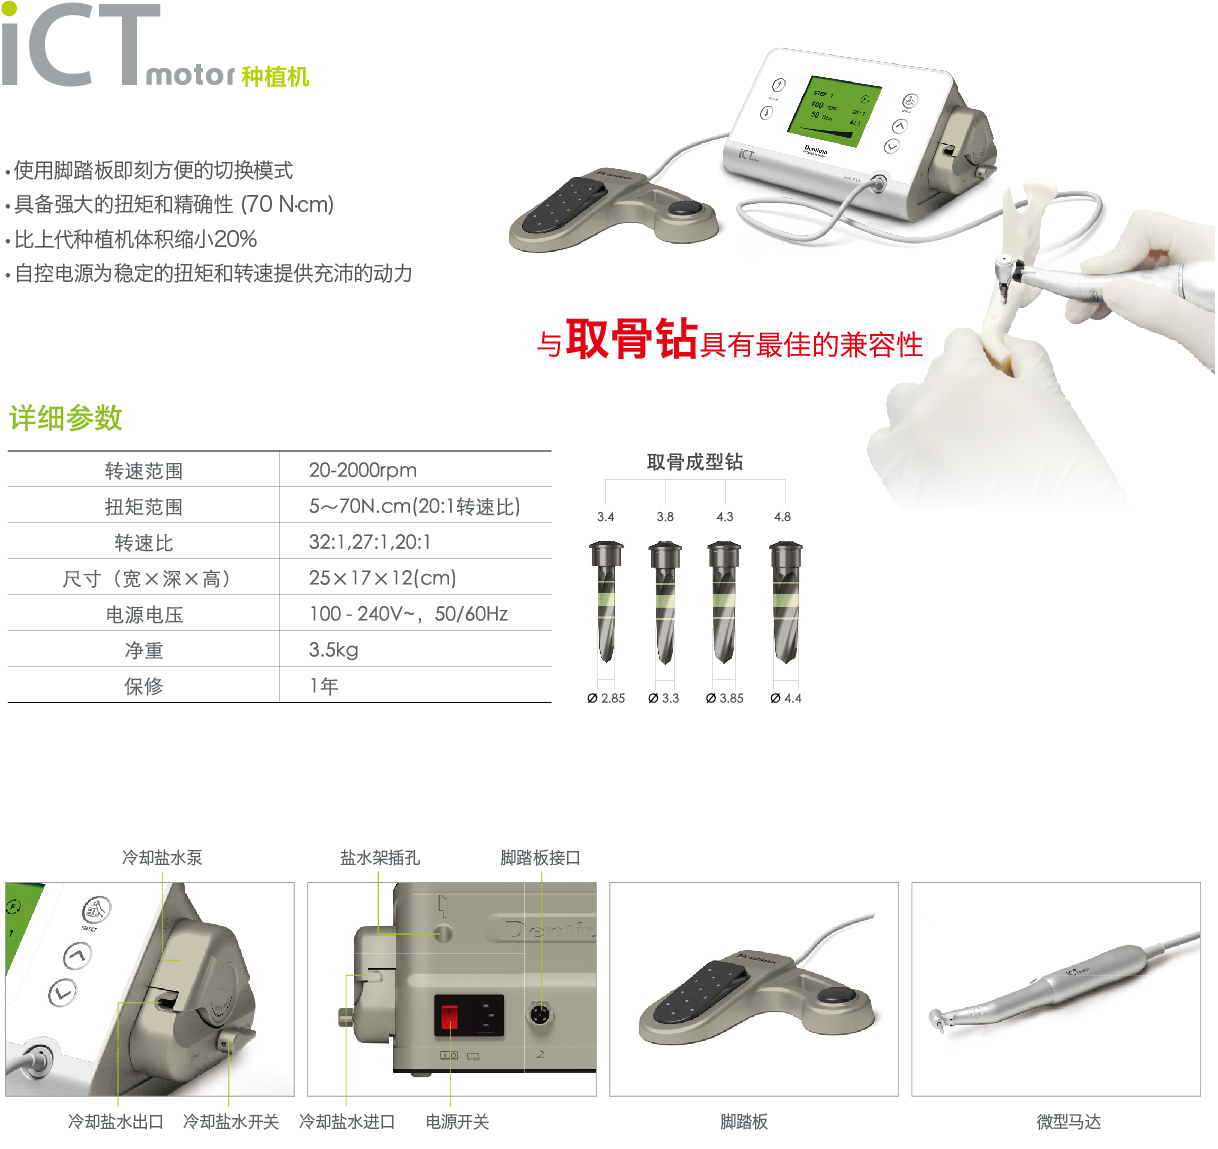 ICT motor-42.jpg